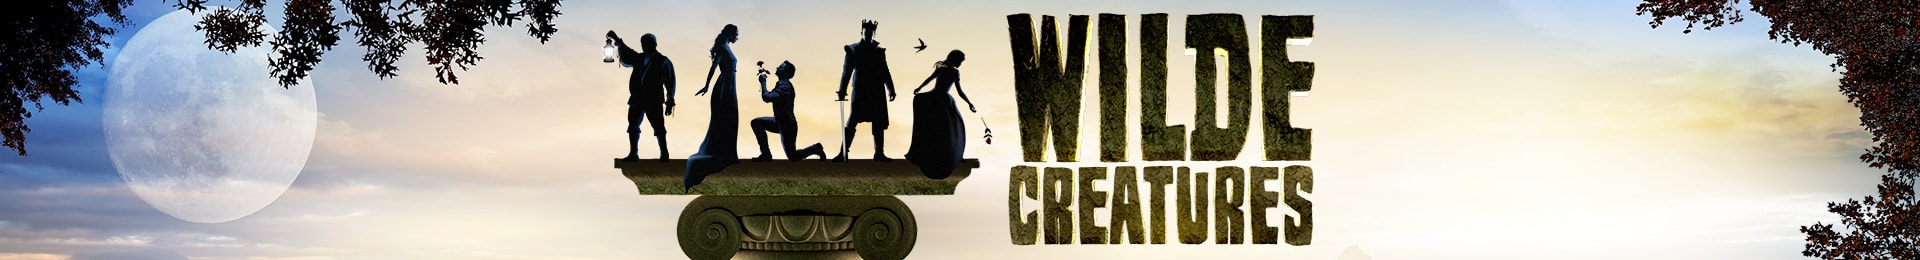 Wilde Creatures banner image